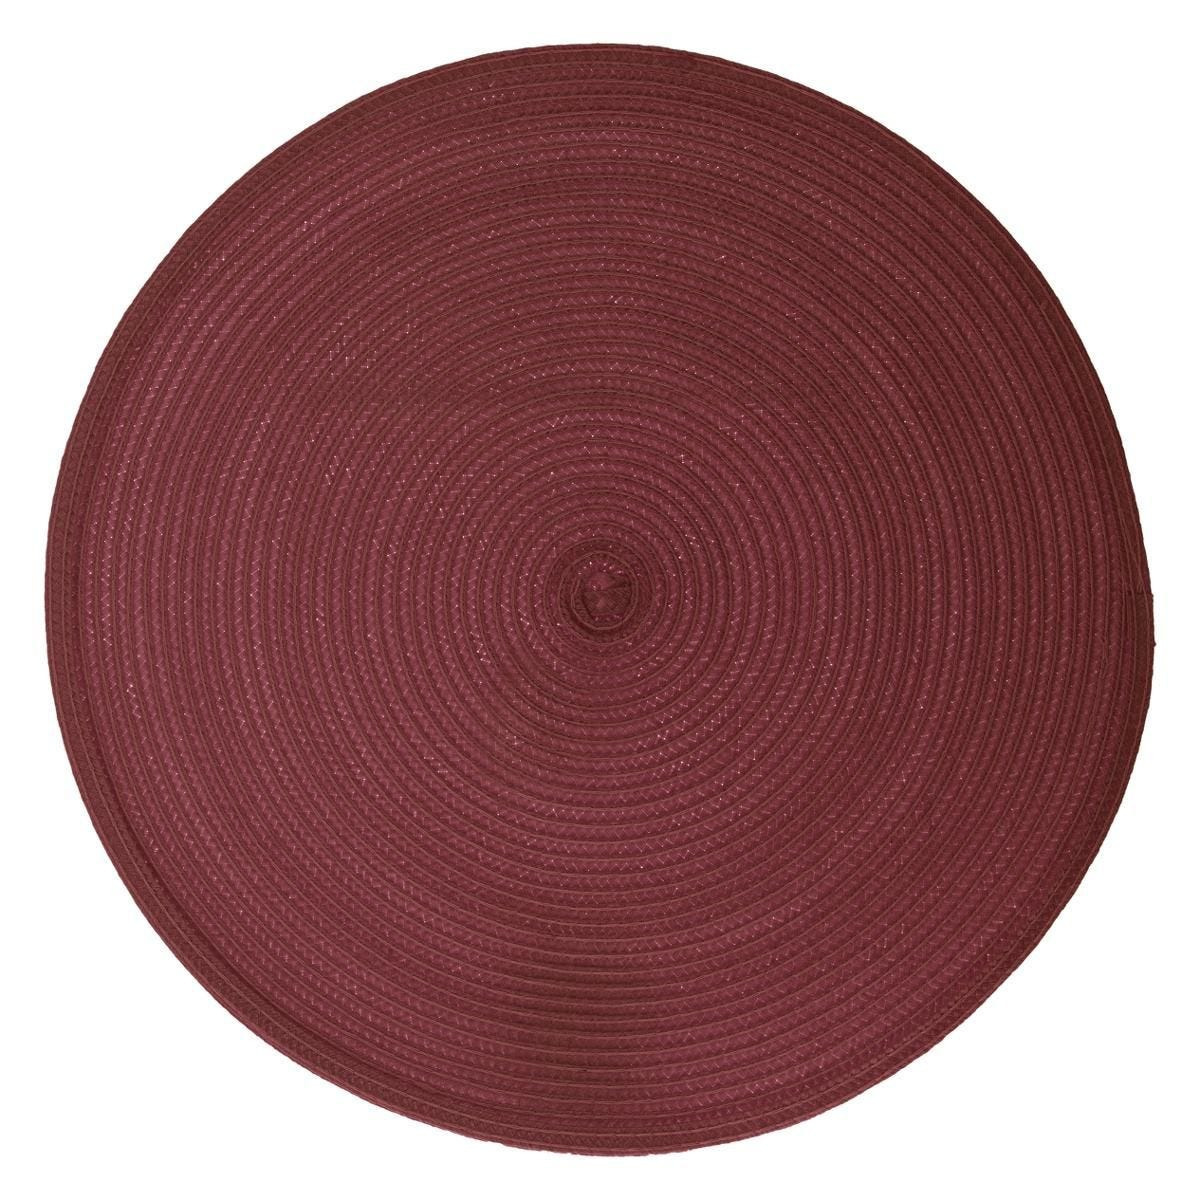 Ronde placemat gevlochten kunststof bordeaux rood 38 cm